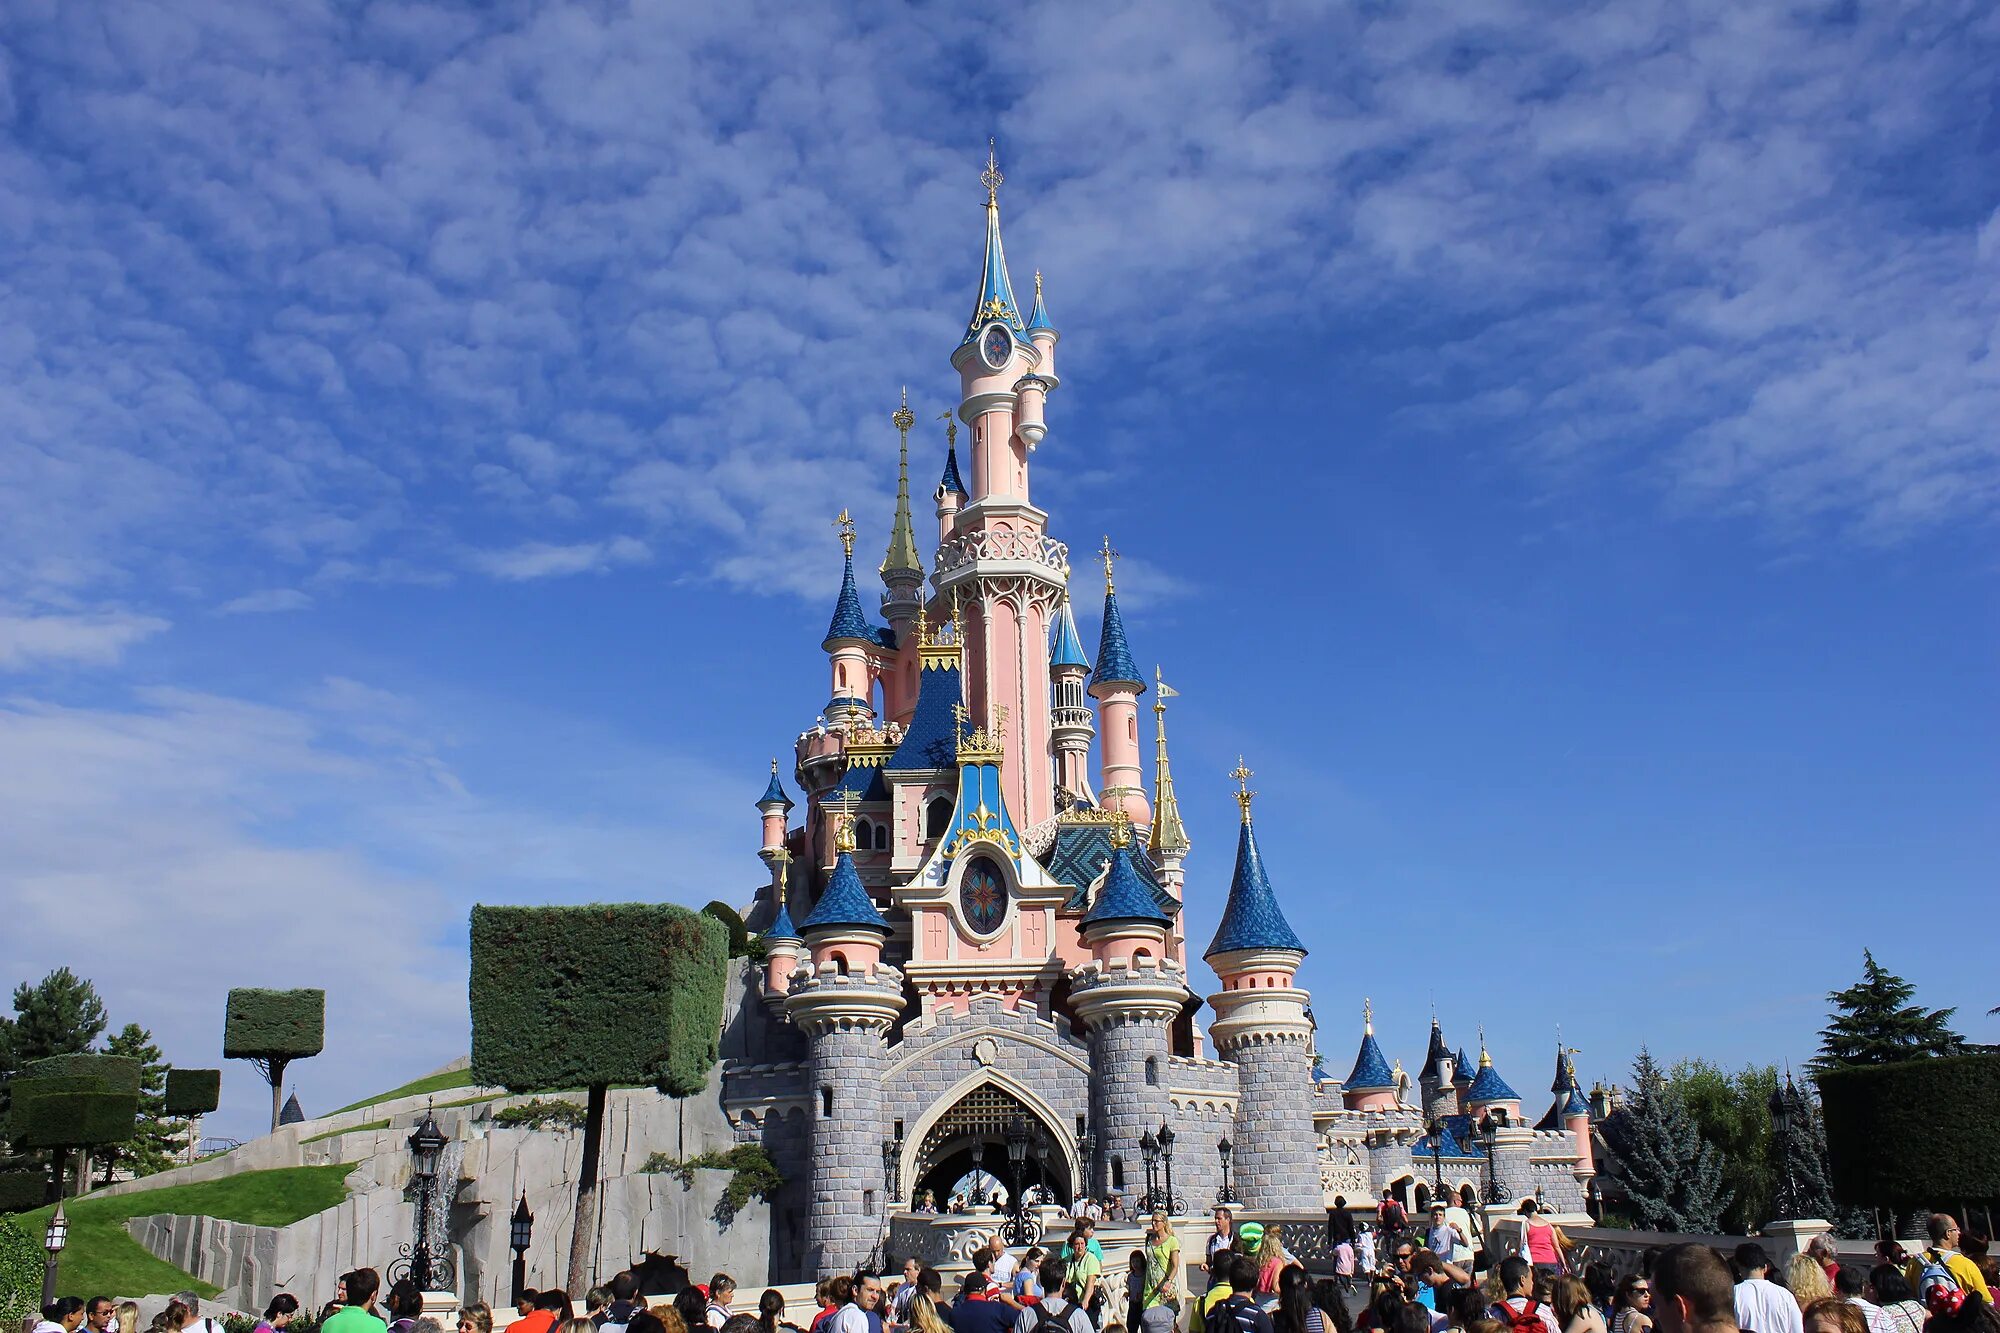 Диснейленд видео. Диснейленд Париж Disneyland Paris. Парижский Диснейленд замок спящей красавицы. Парк Уолт Дисней в Париже. Диснейленд Париж Диснейленд парк.